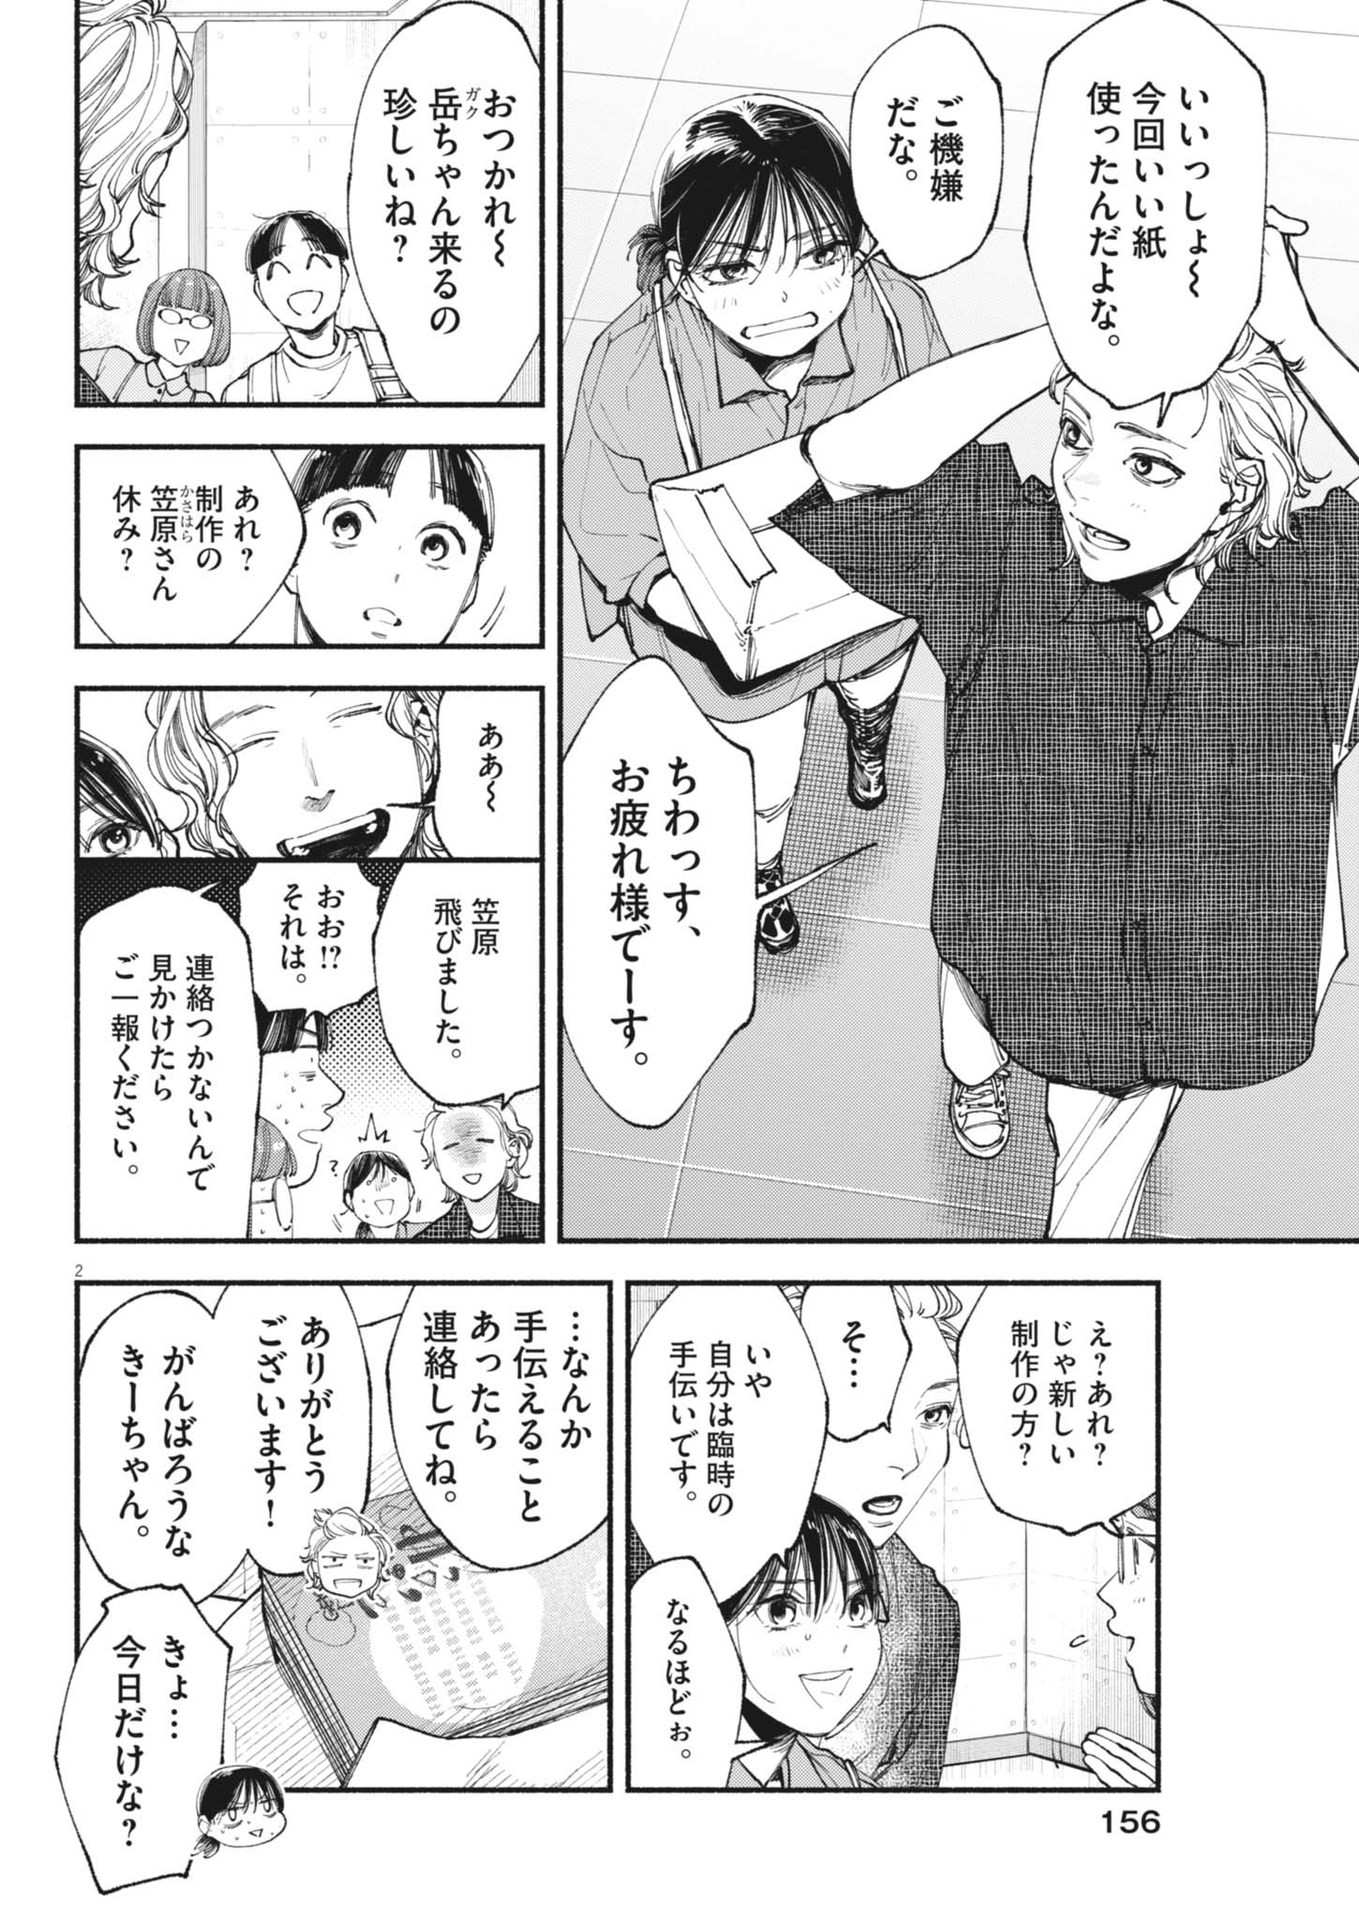 Konoyo wa Tatakau Kachi ga Aru  - Chapter 28 - Page 2